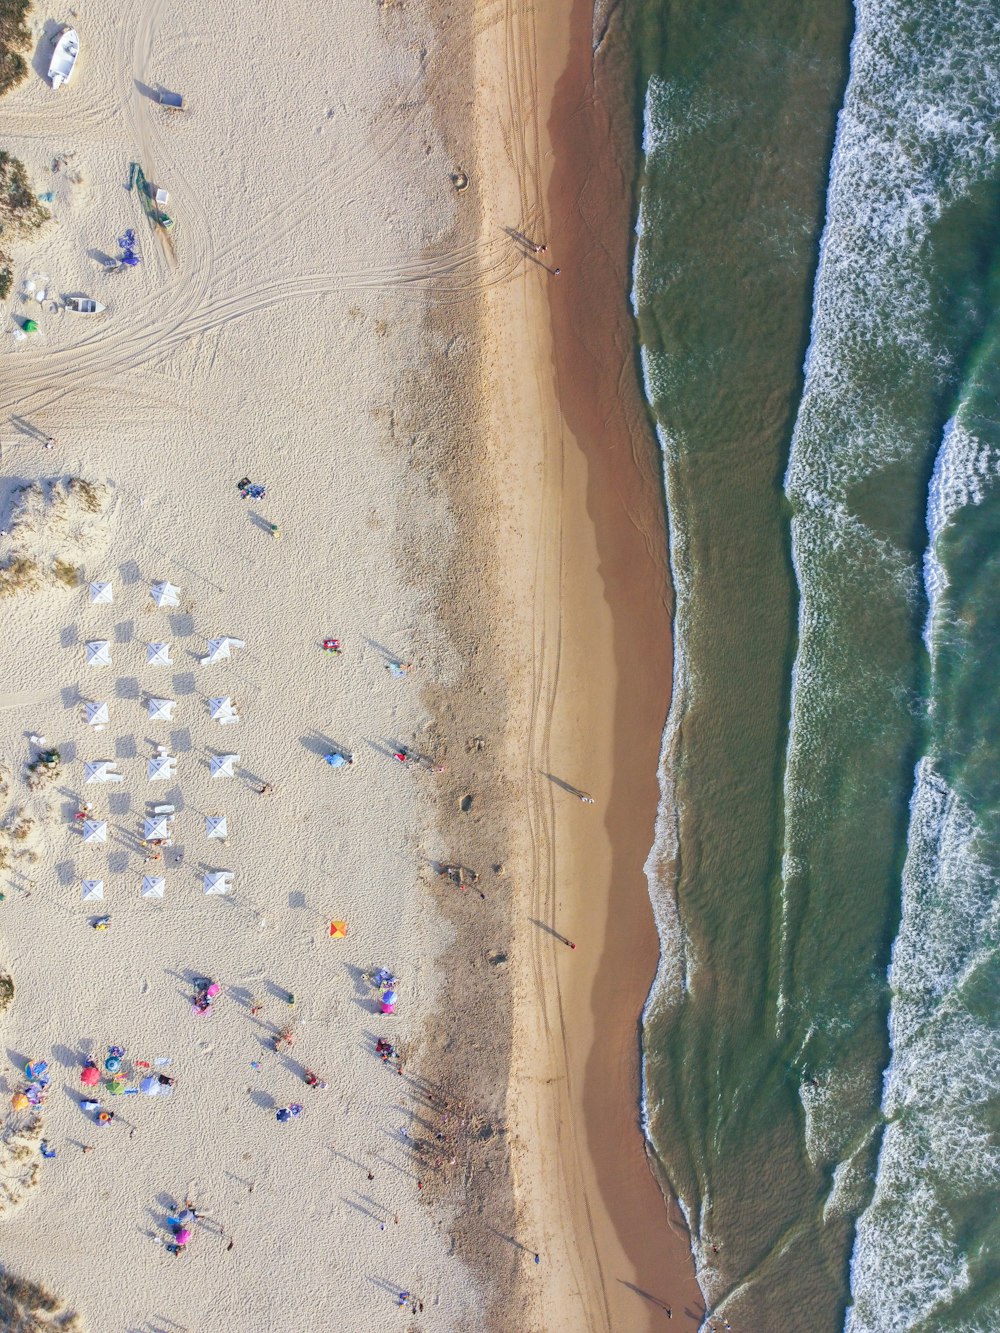 pessoas na praia durante o dia